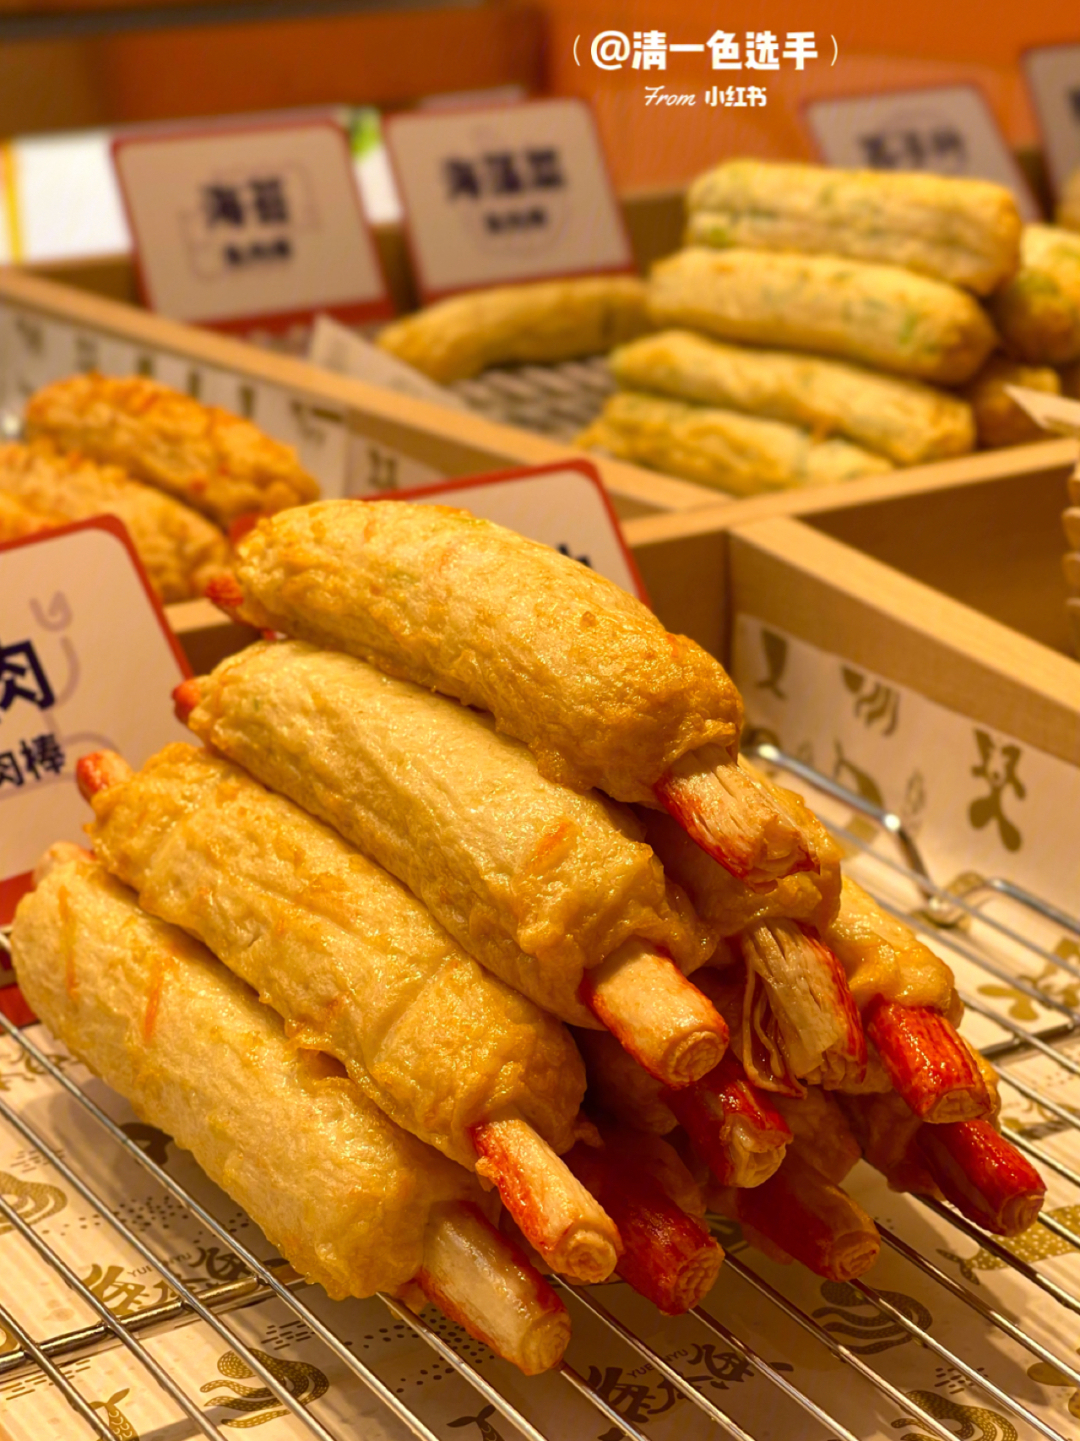 是去韩国必吃的国民小吃了96之前去韩国感觉大街小巷全都是卖鱼糕的